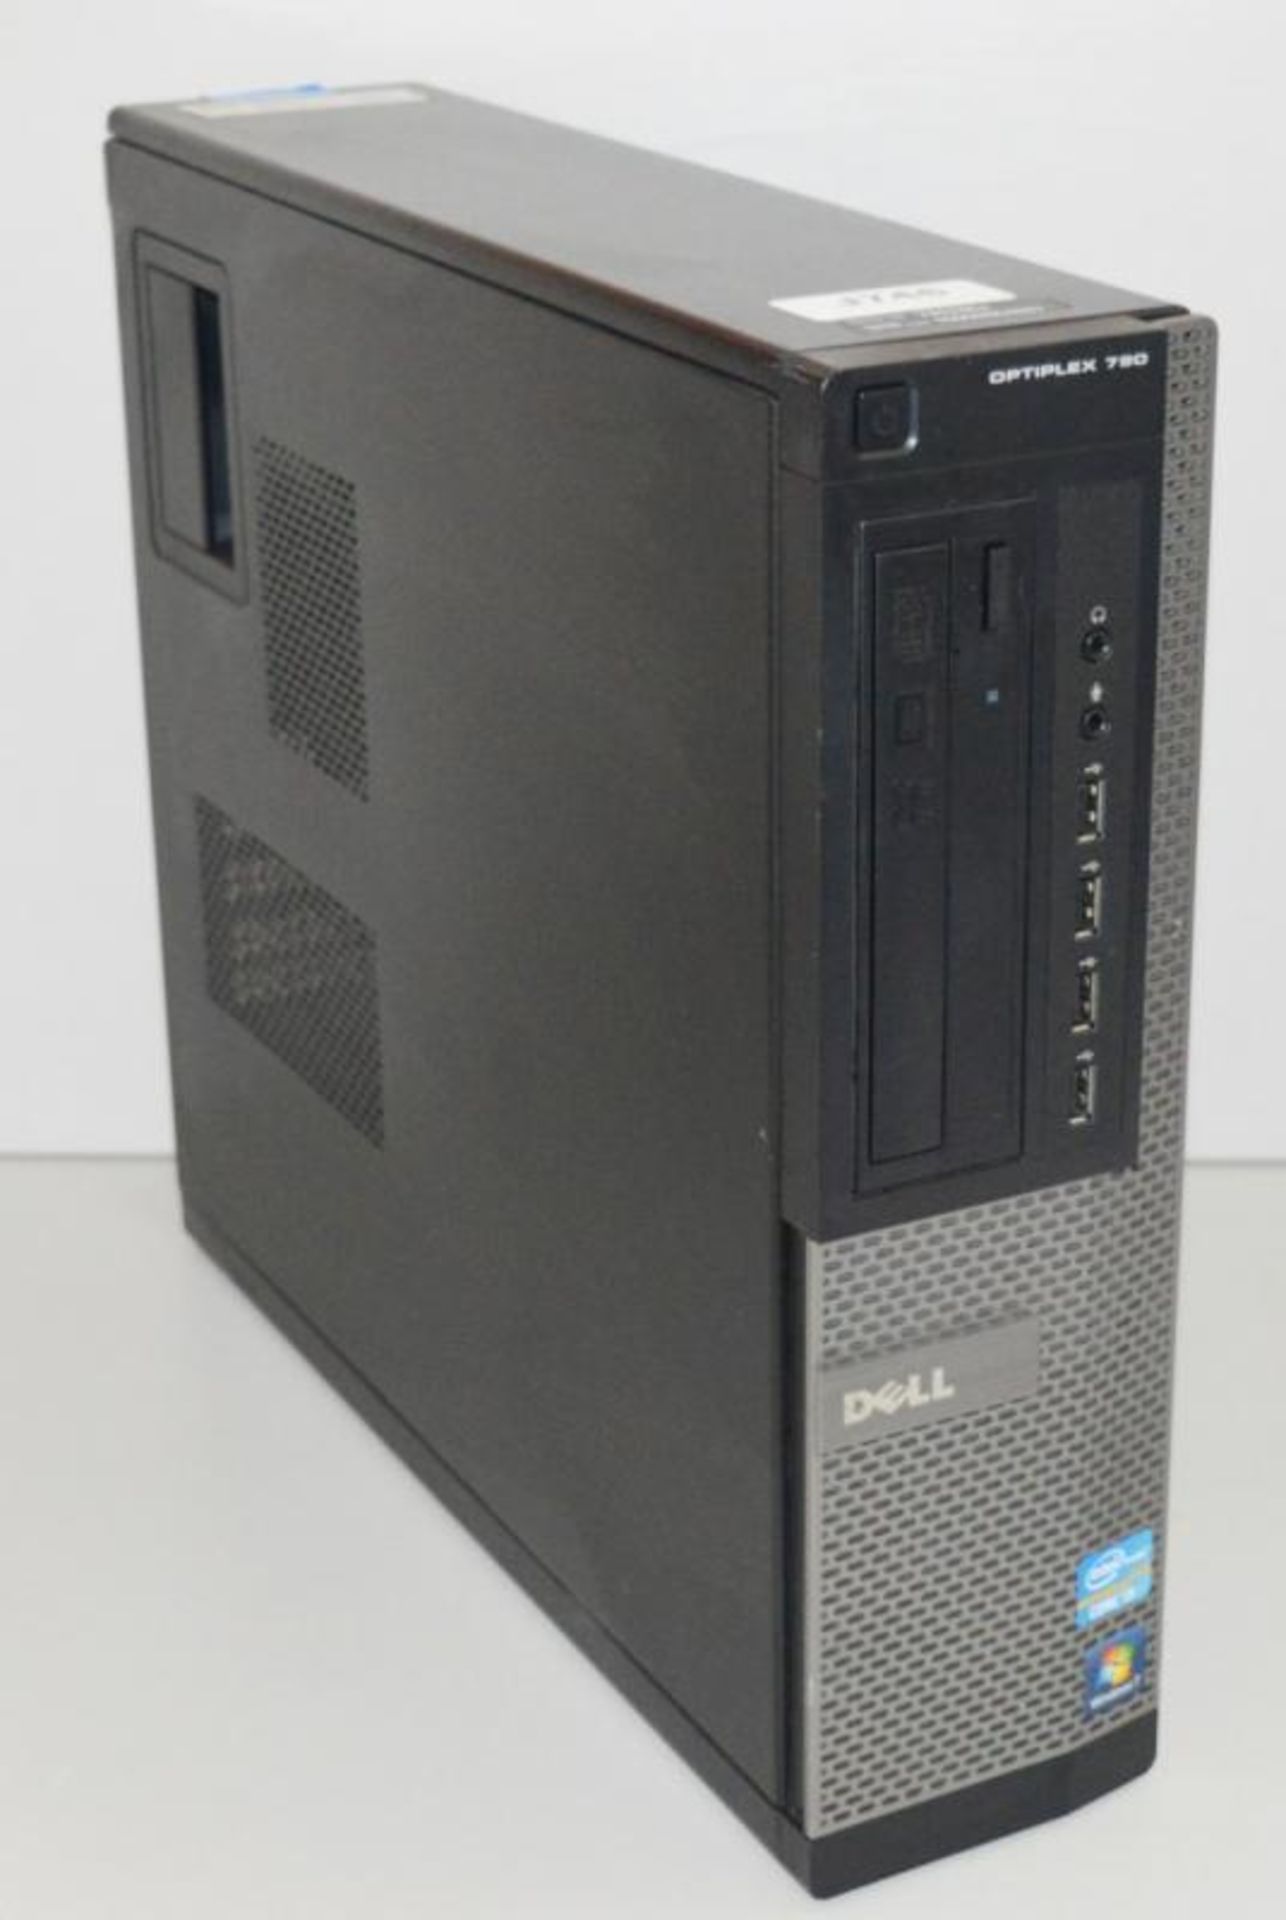 1 x Dell Optiplex 790 Desktop Computer - Features an Intel i3 Processor and 4gb DDR3 Ram - Hard Disk